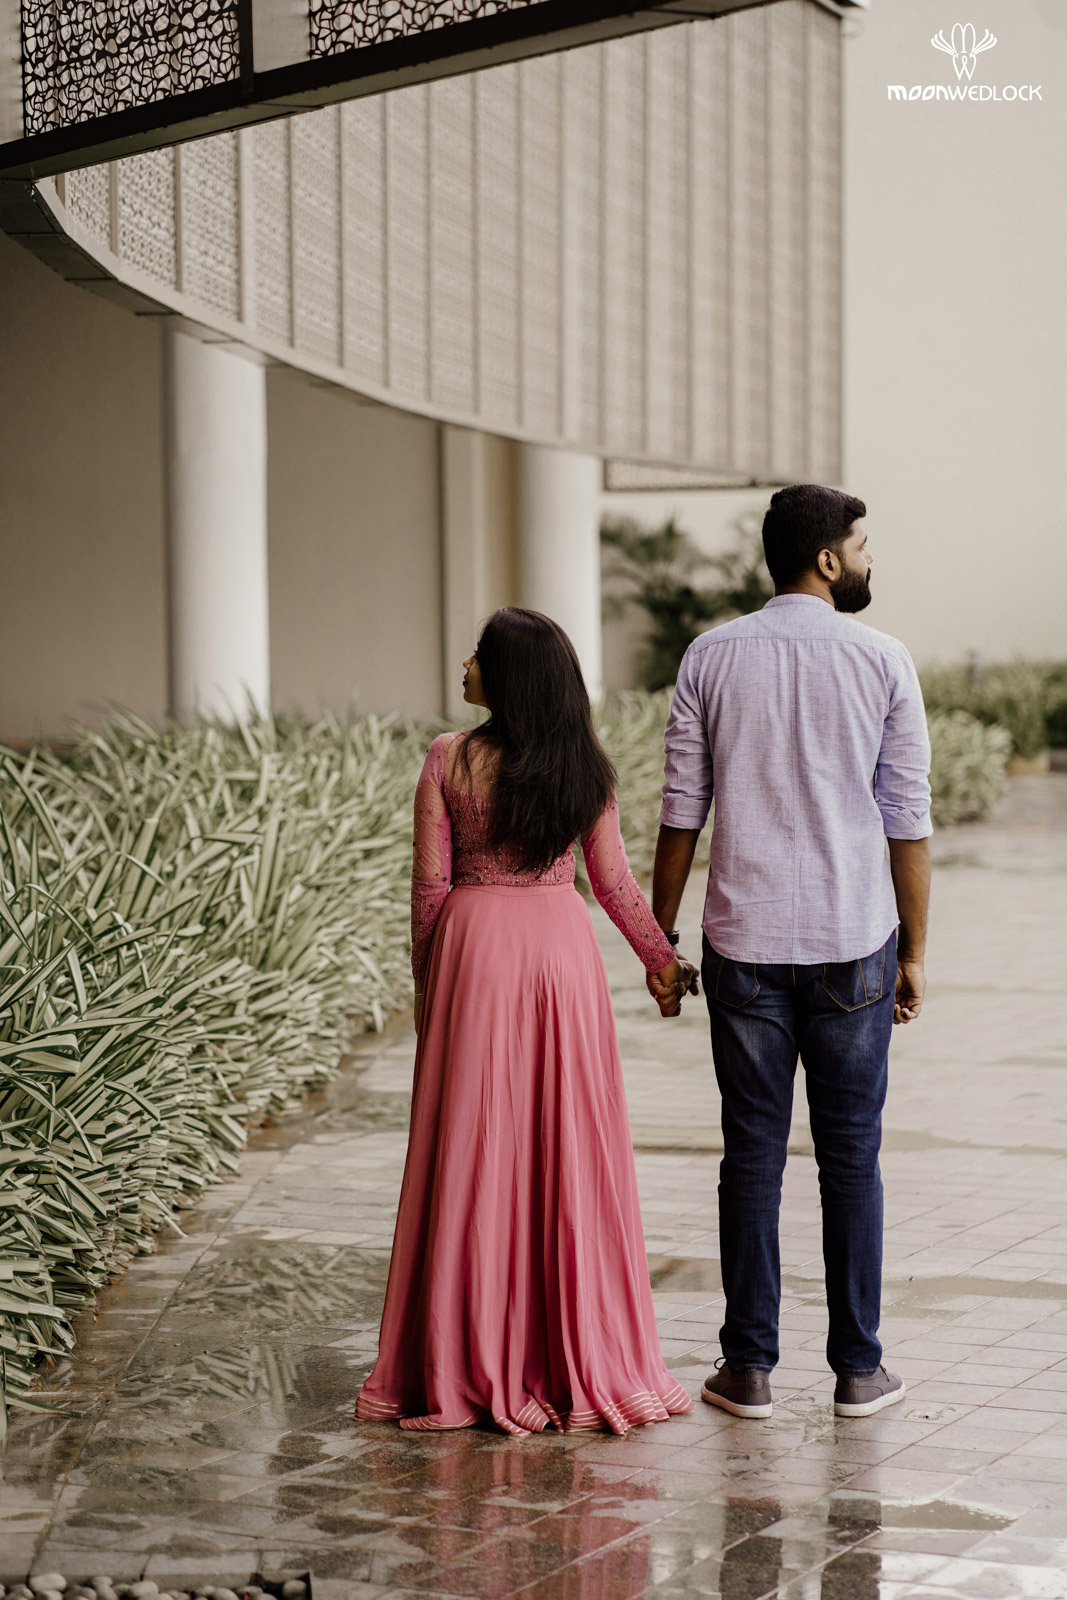 wedding-photographers-in-bangalore -moonwedlock (32)